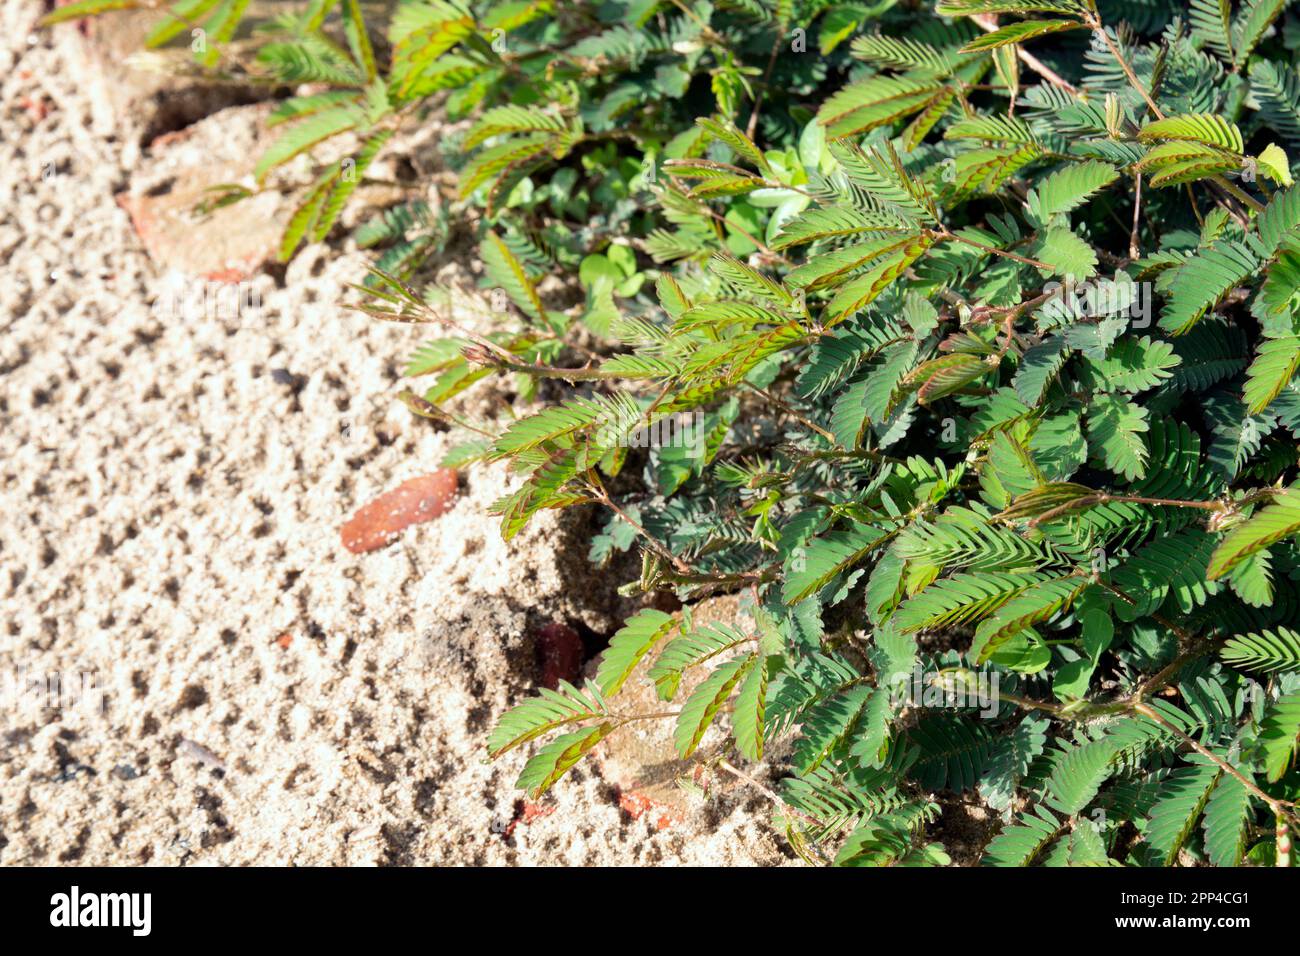 Lojjaboti ou Touch Me pas plante ou Mimosa pudica est une plante à fleurs rampante annuelle ou vivace de la famille des pois ou des légumineuses Fabaceae. Pla sensible Banque D'Images